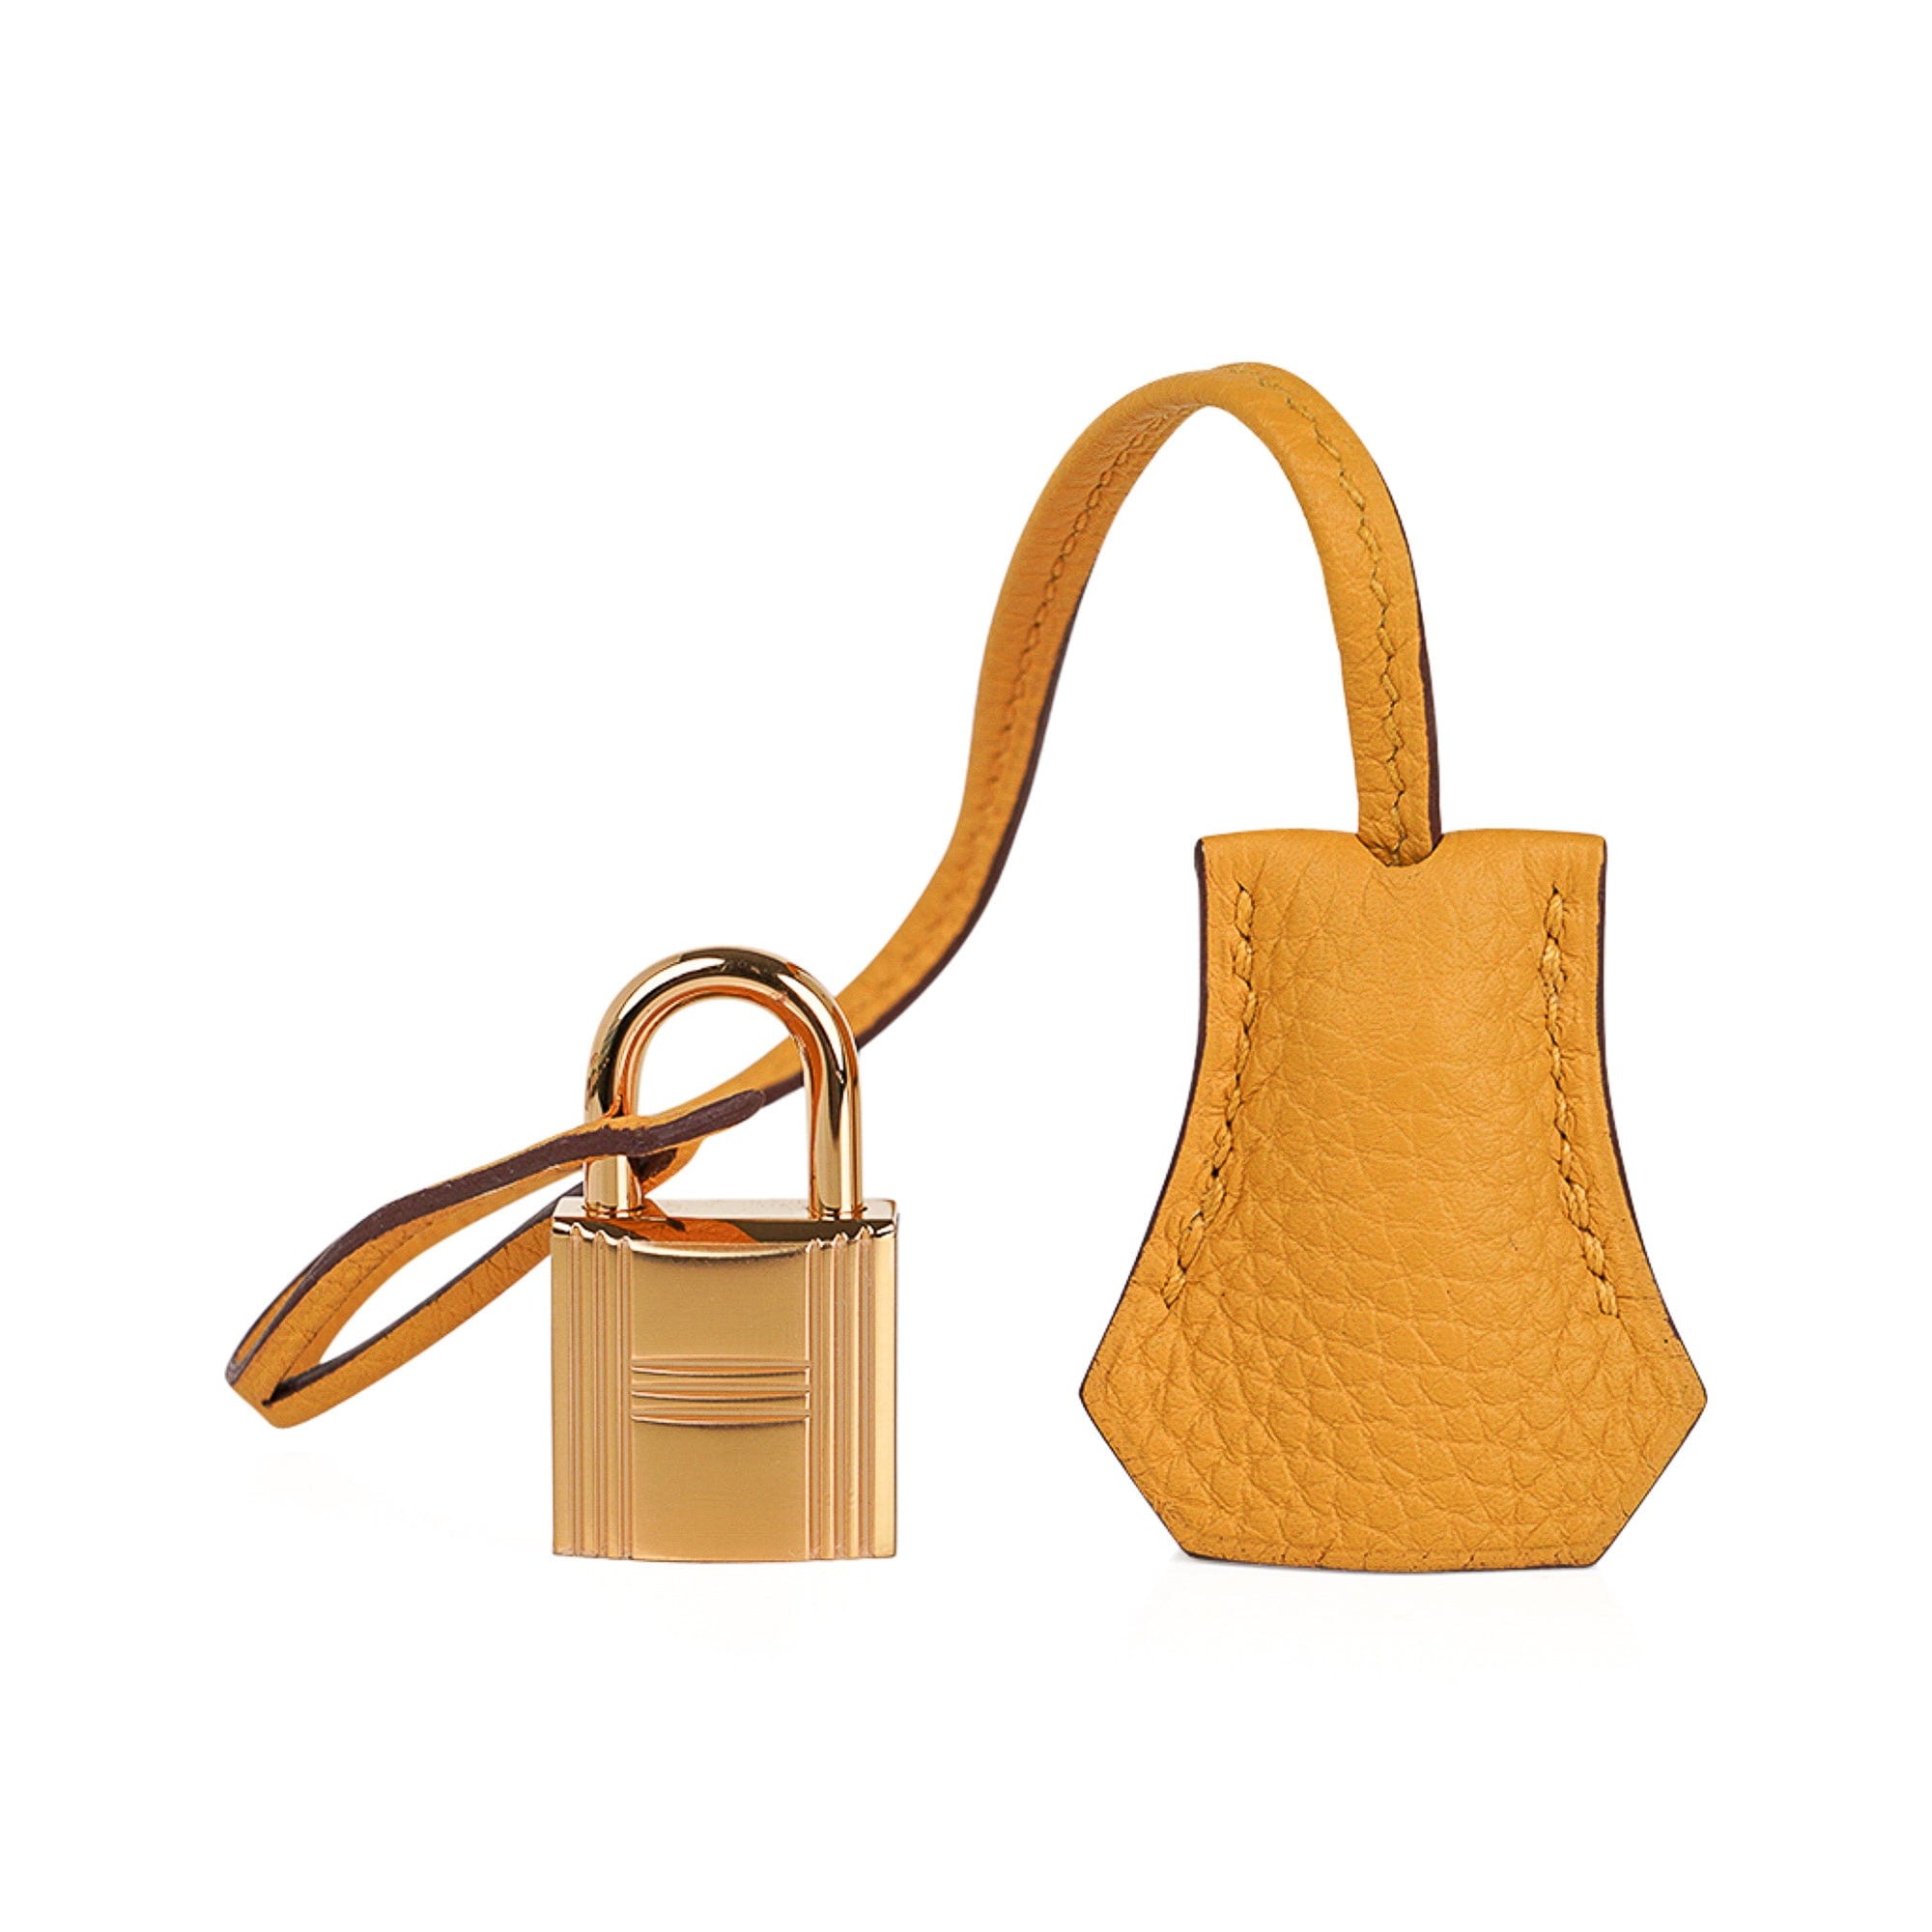 Hermes Birkin Bag 30cm Jaune Ambre (Amber) Togo Gold Hardware